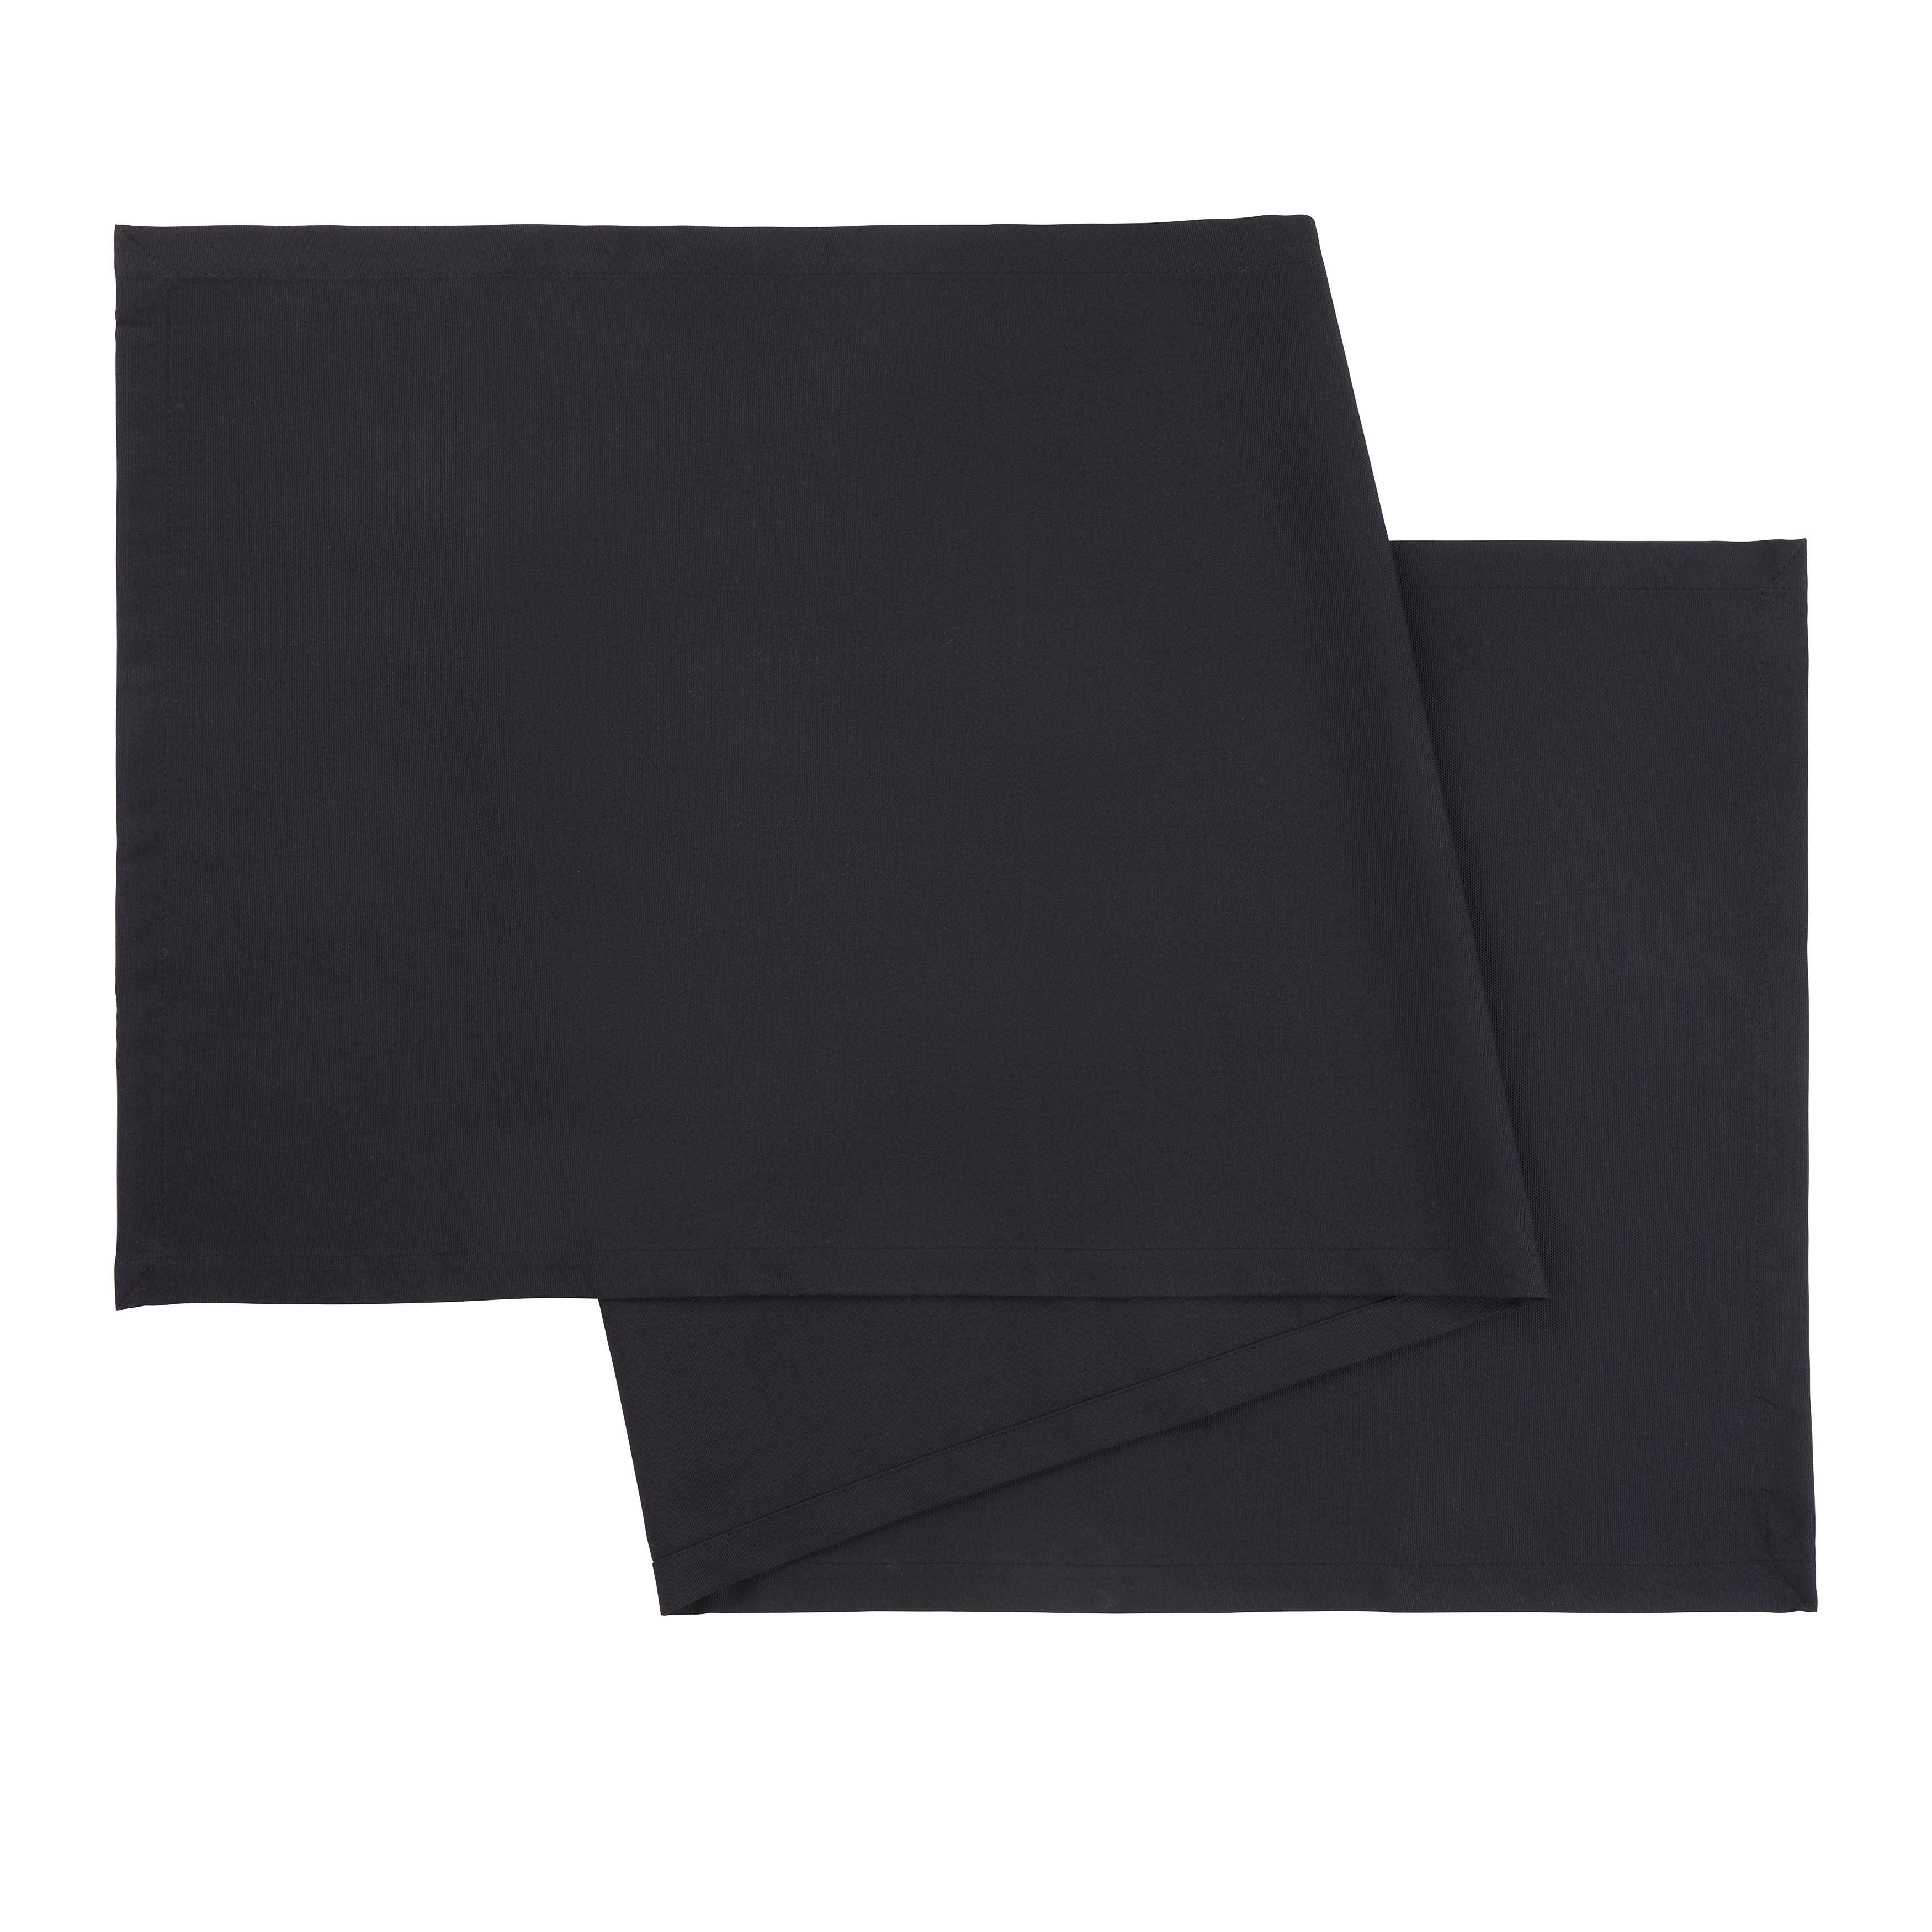 Nadprt Steffi - črna, tekstil (45/150cm) - Modern Living